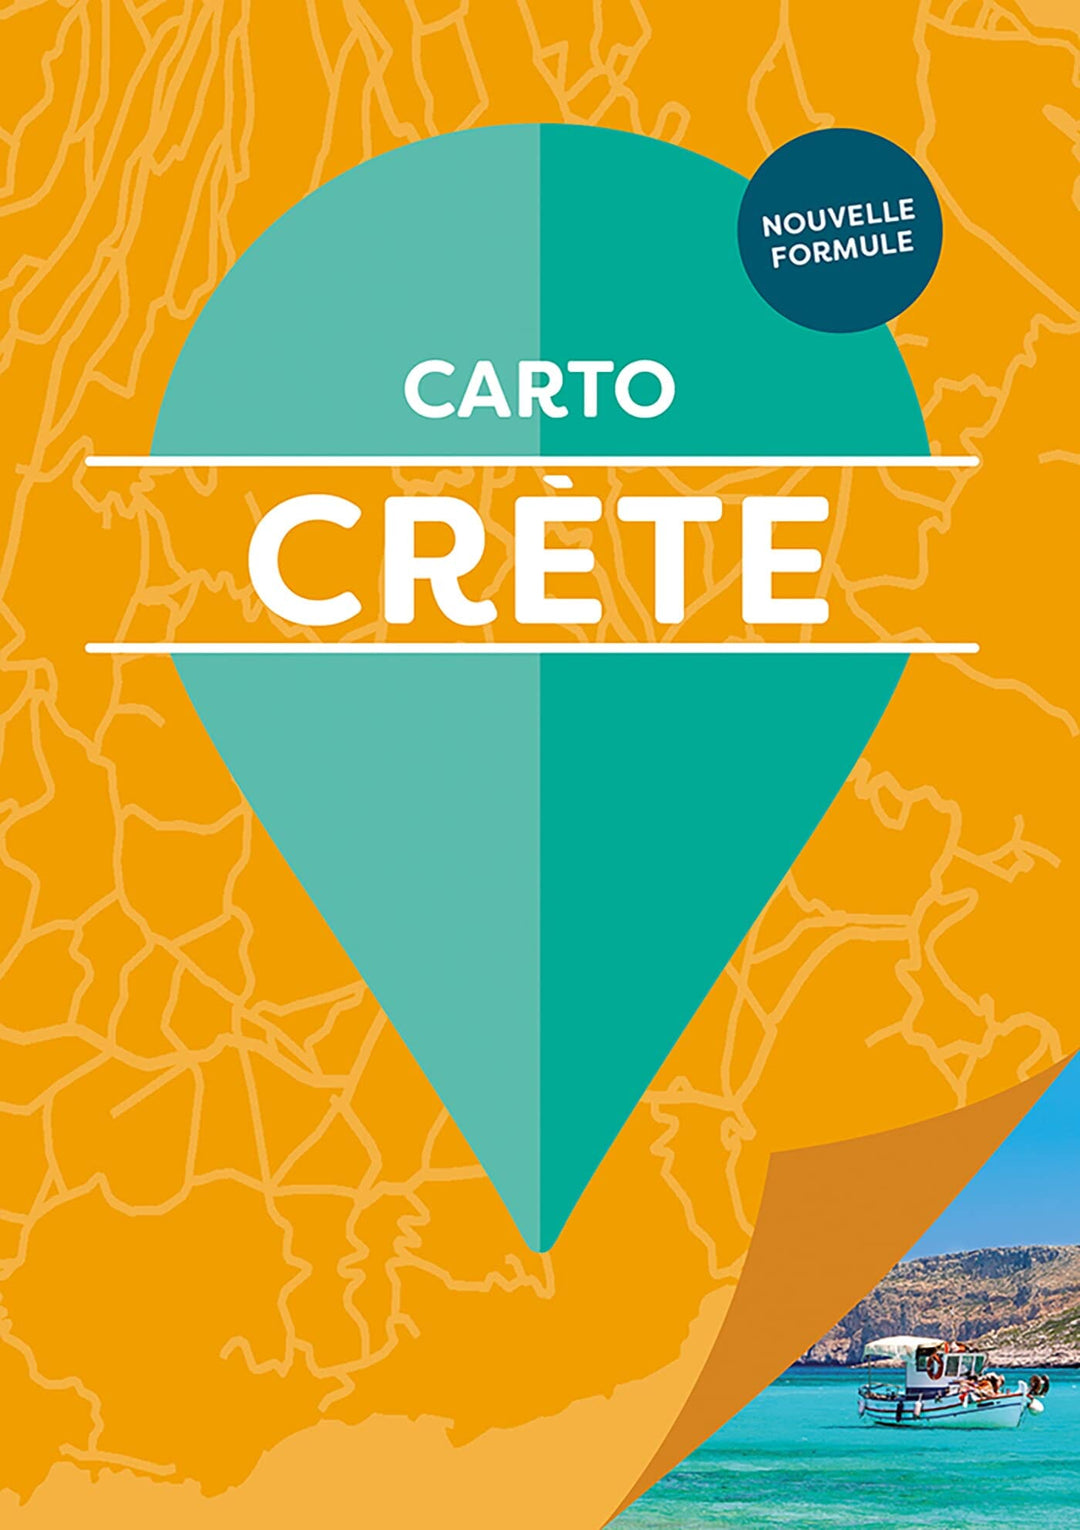 Carnet de poche de cartes détaillées - Crète | Cartoville carte pliée Gallimard 